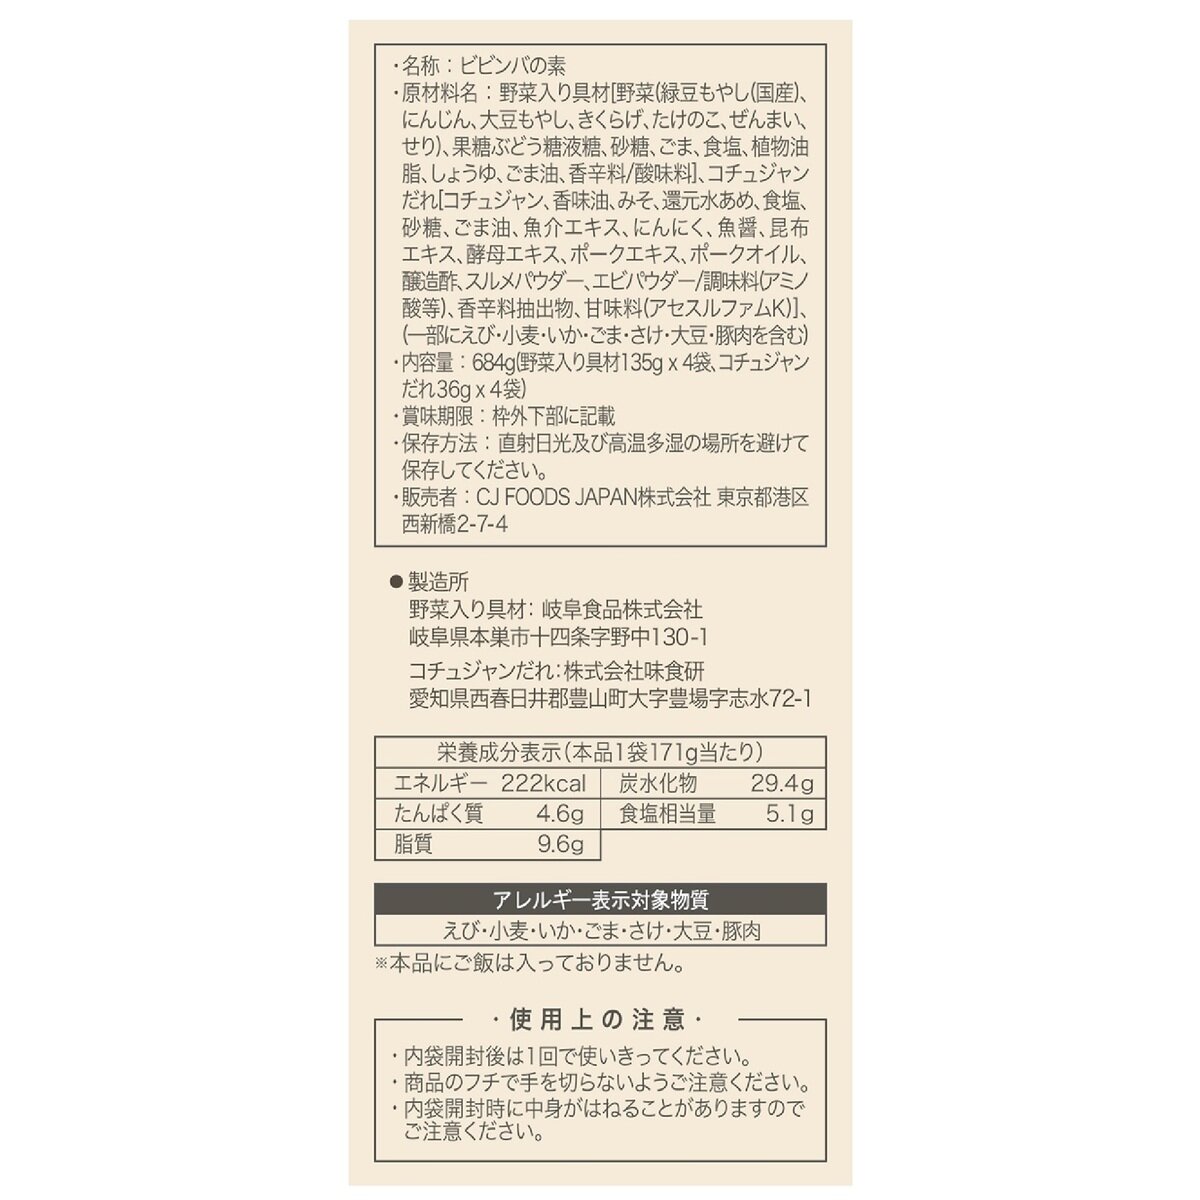 ビビゴ ビビンバの素 2人前 x 4パック | Costco Japan